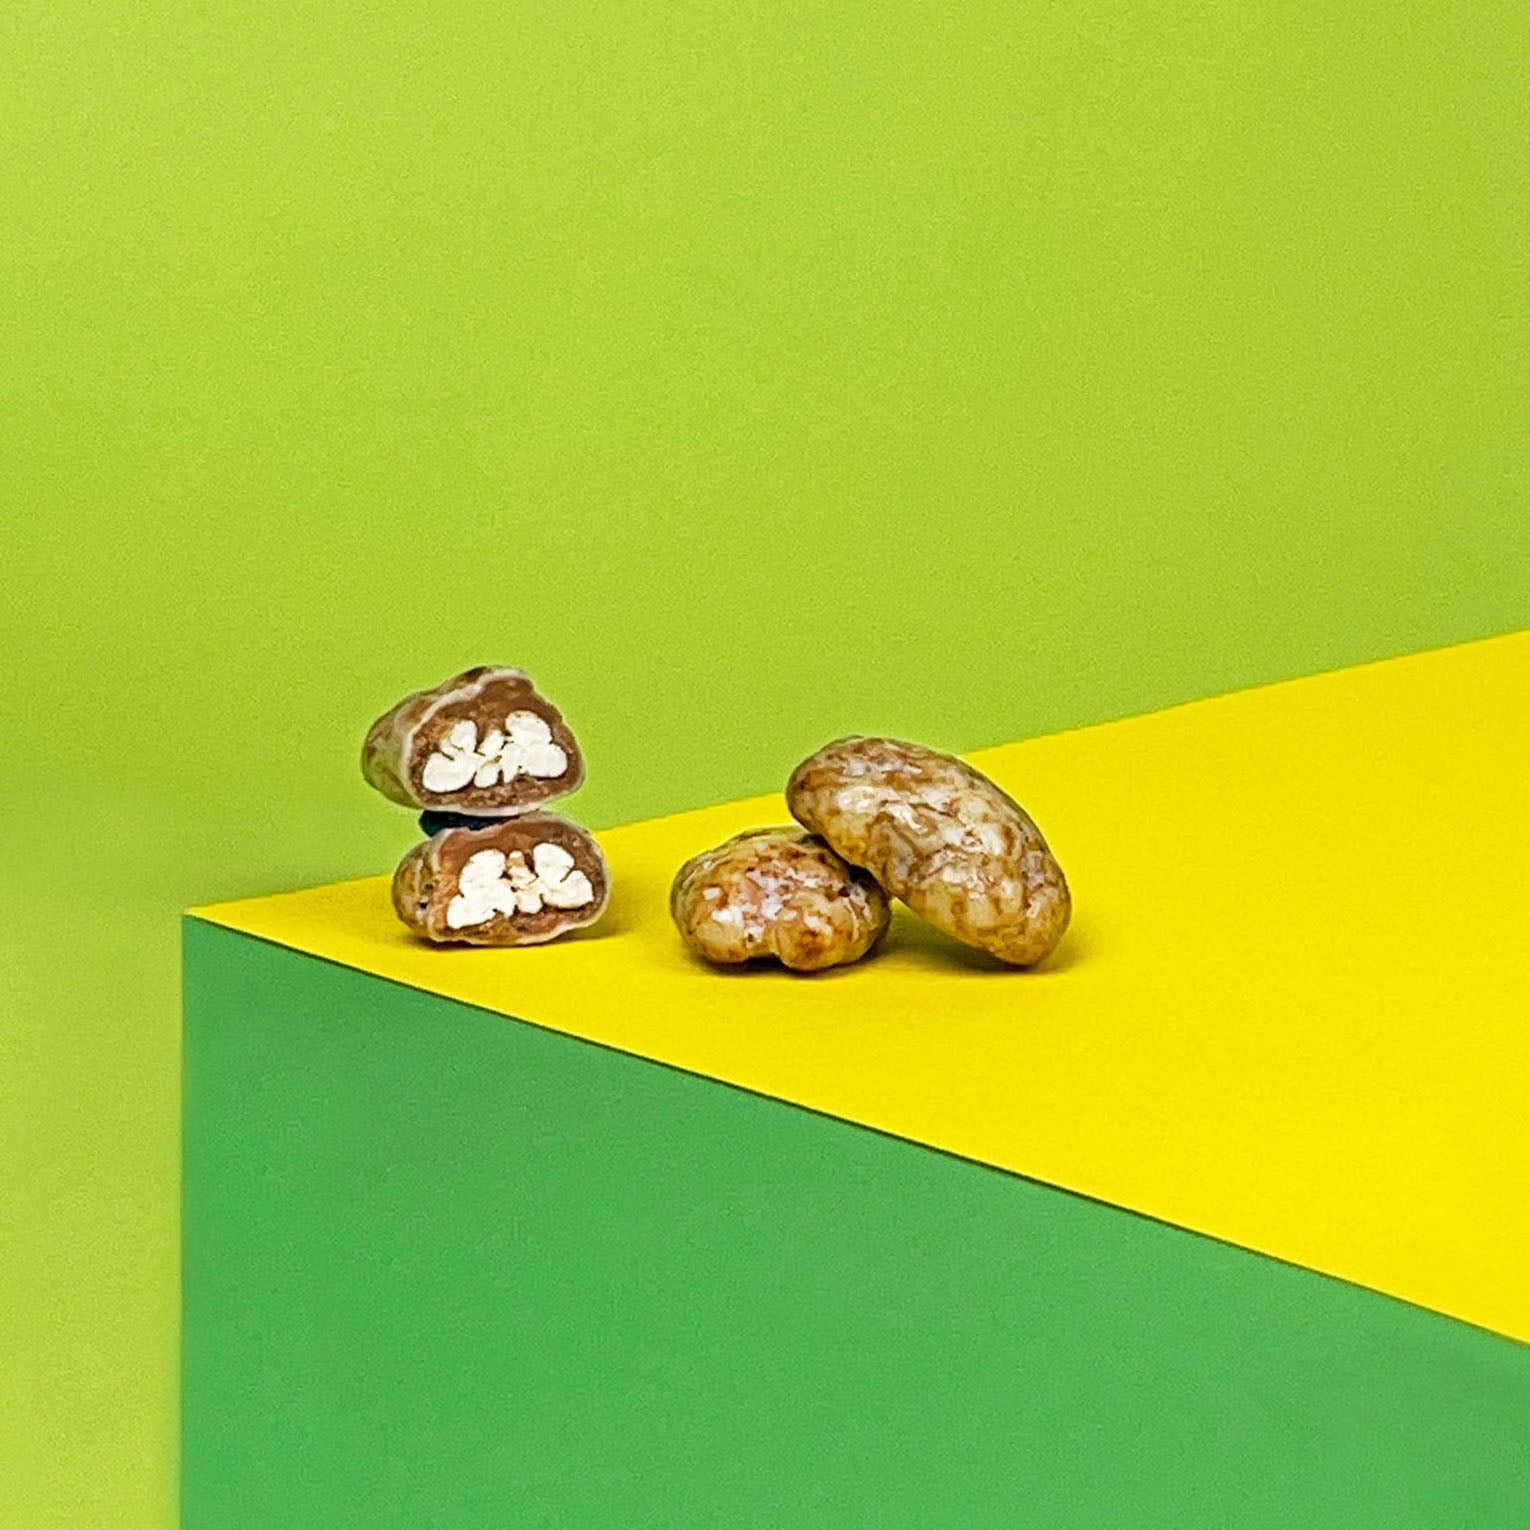 Angeschnittene Pecannuss vor gelbem und grünen Hintergrund. Vollmilchschokolade und weiße Schokolade umhüllen die köstliche Nuss.